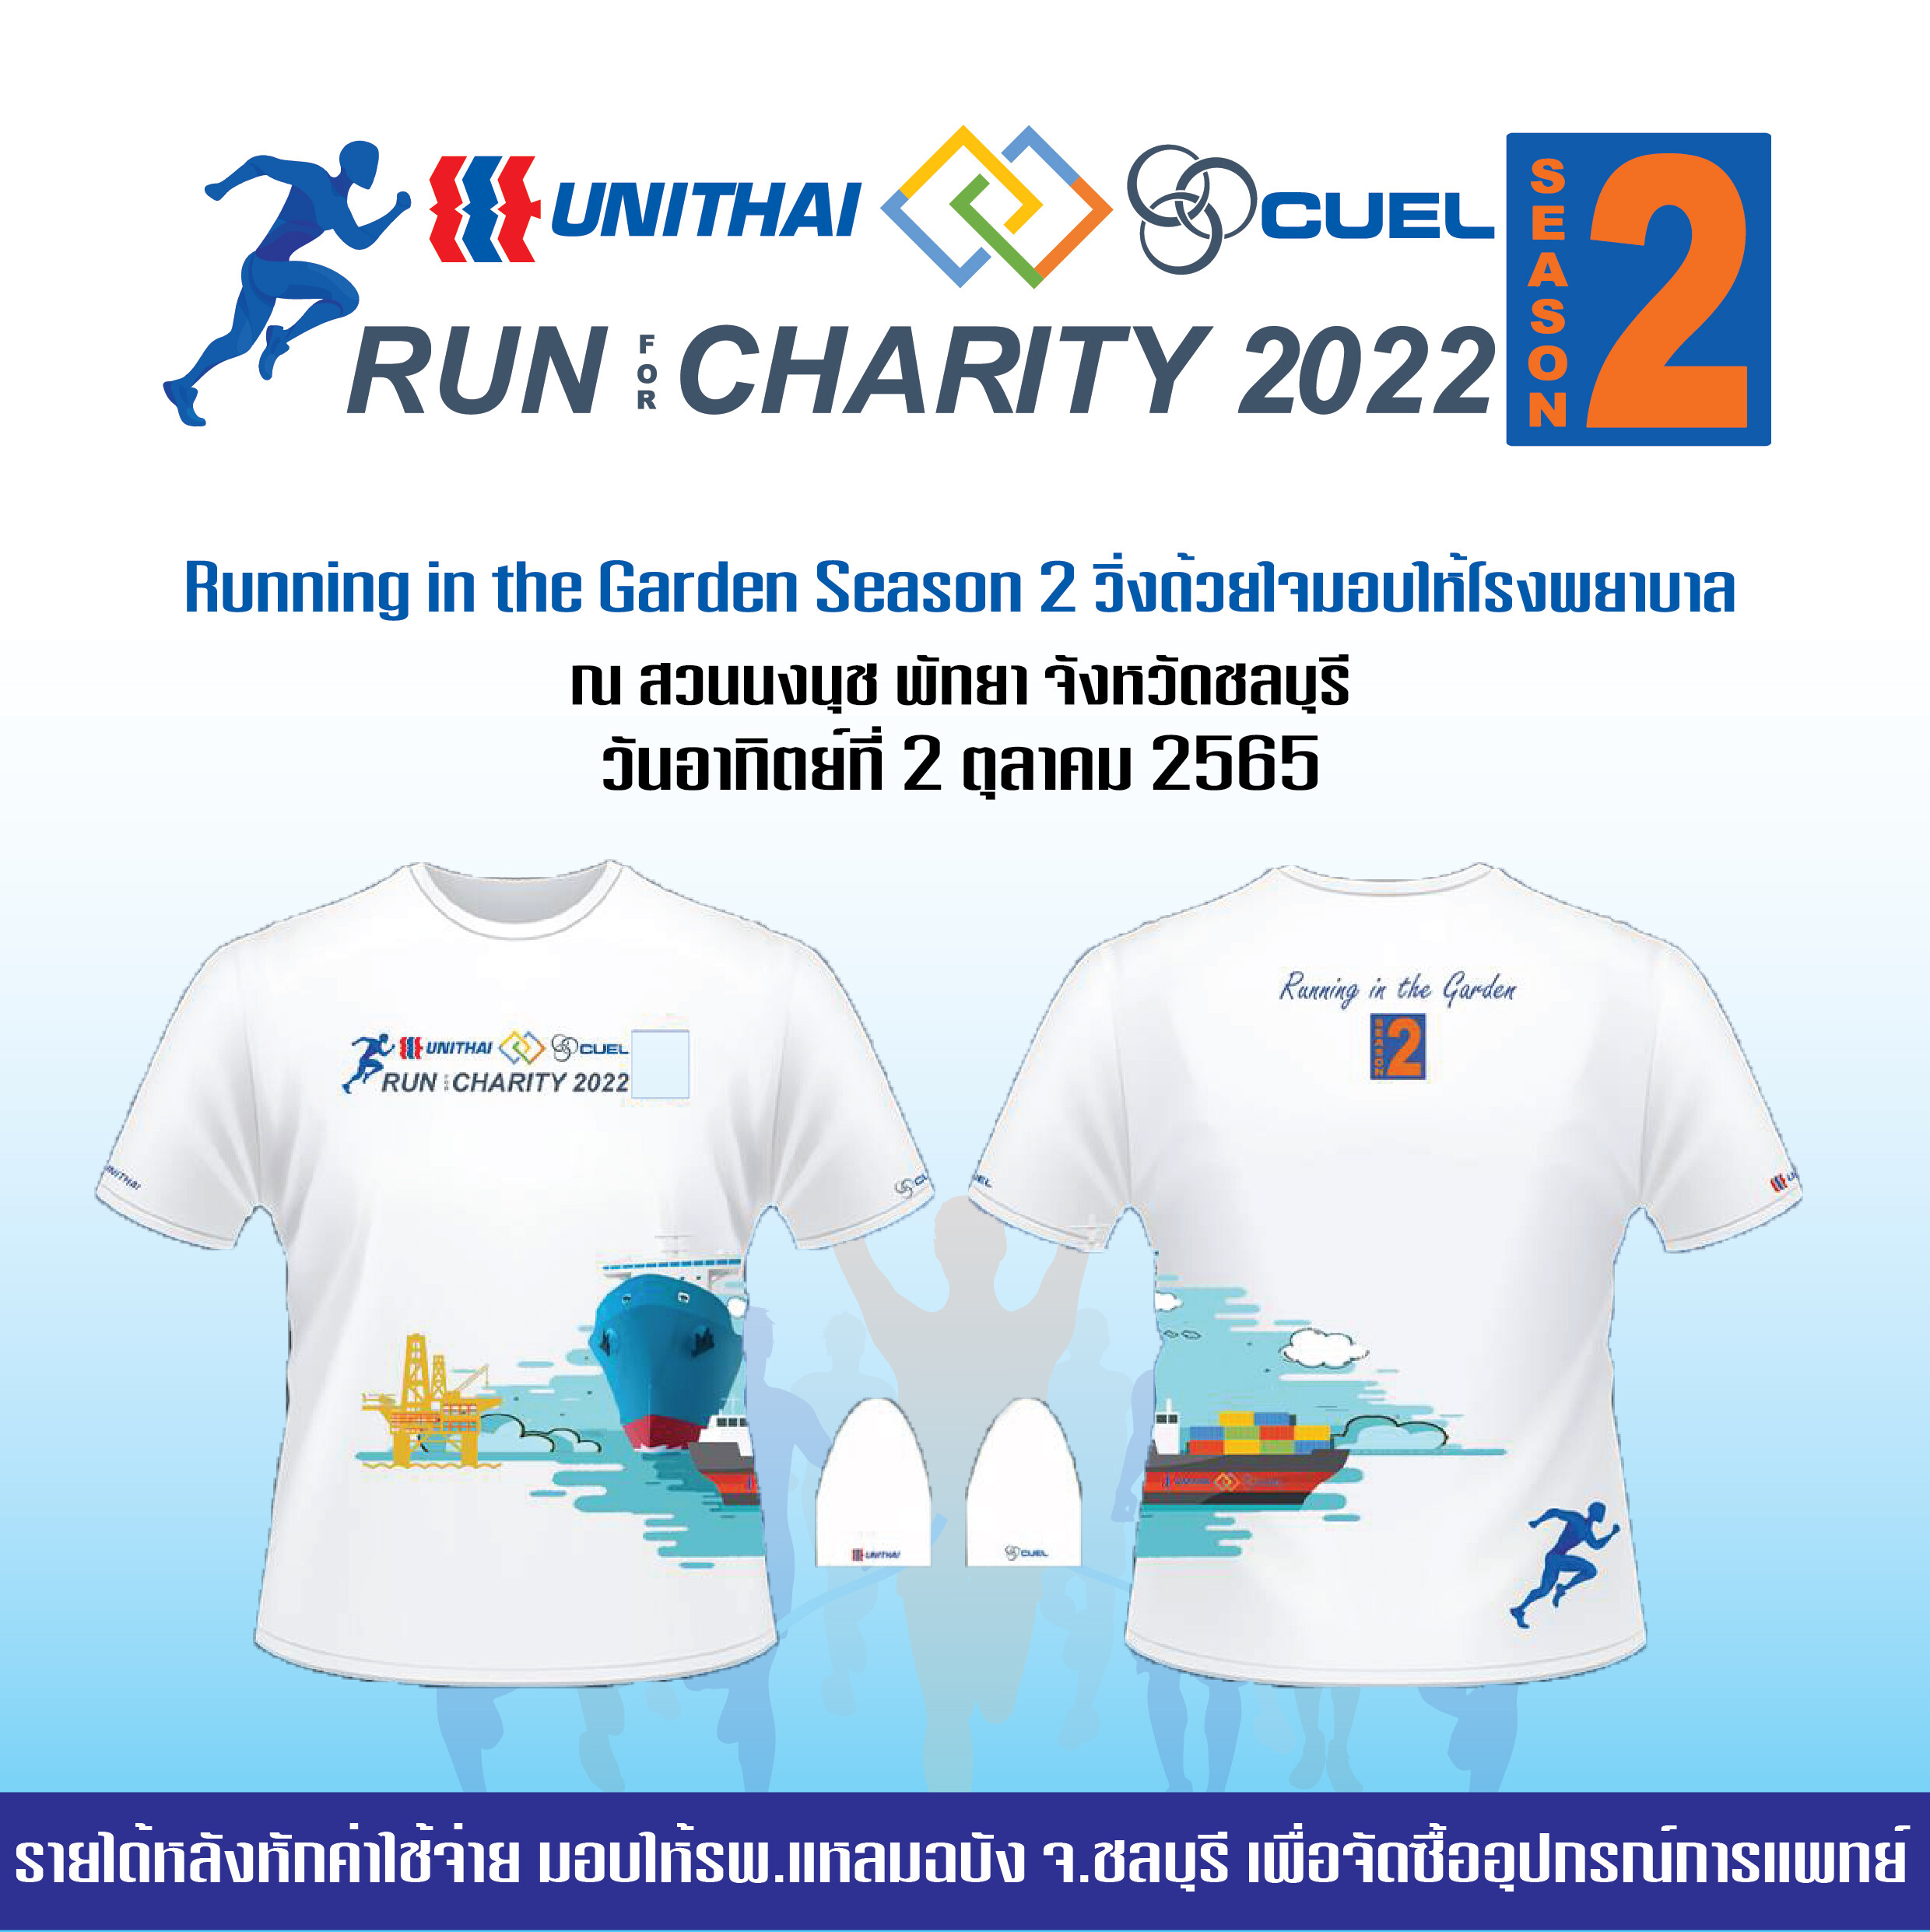 งานวิ่งการกุศล Unithai-CUEL Run for Charity 2022 ครั้งที่ 2